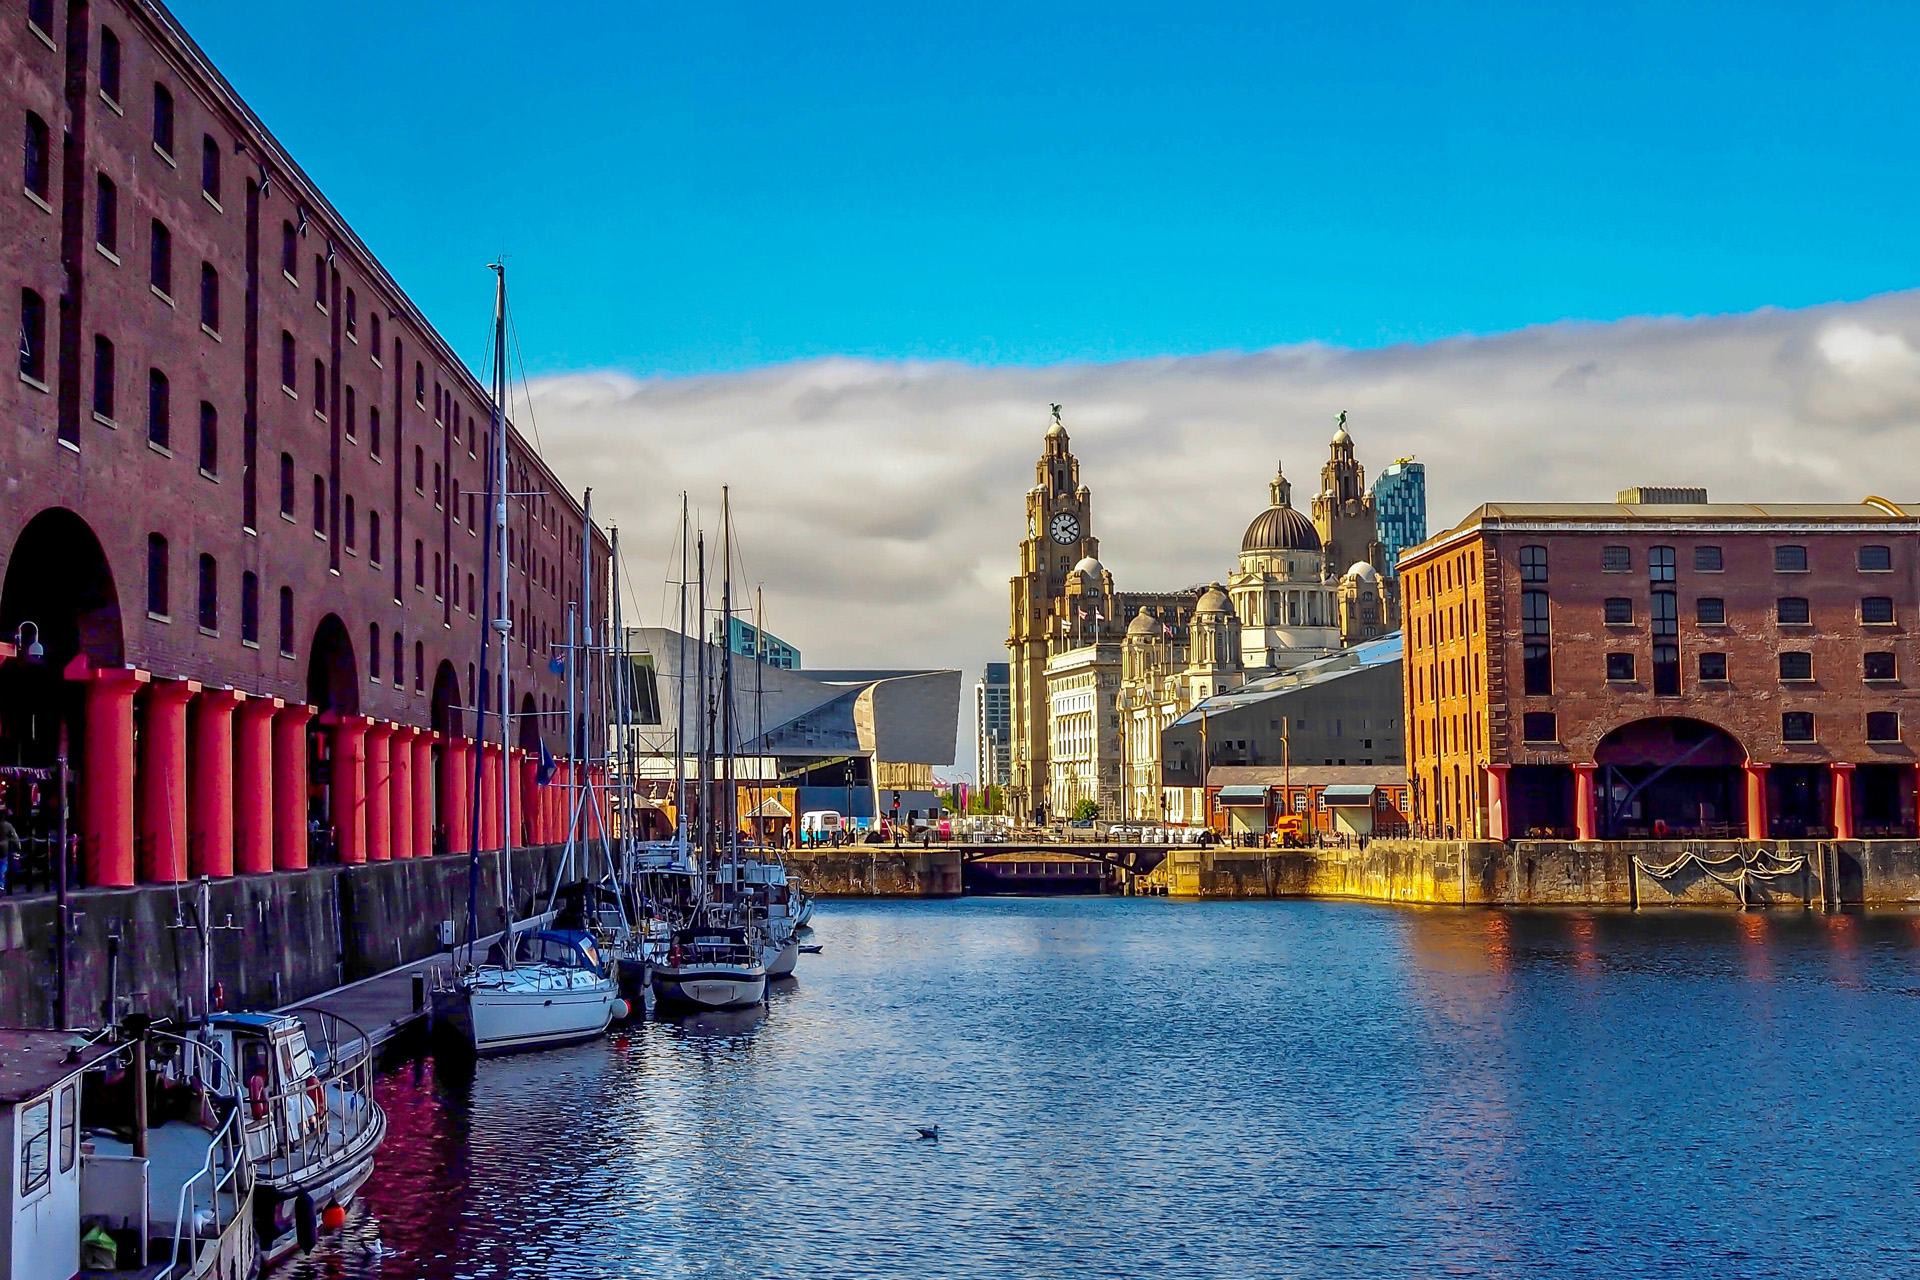 Albert Dock,Liverpool,UK.